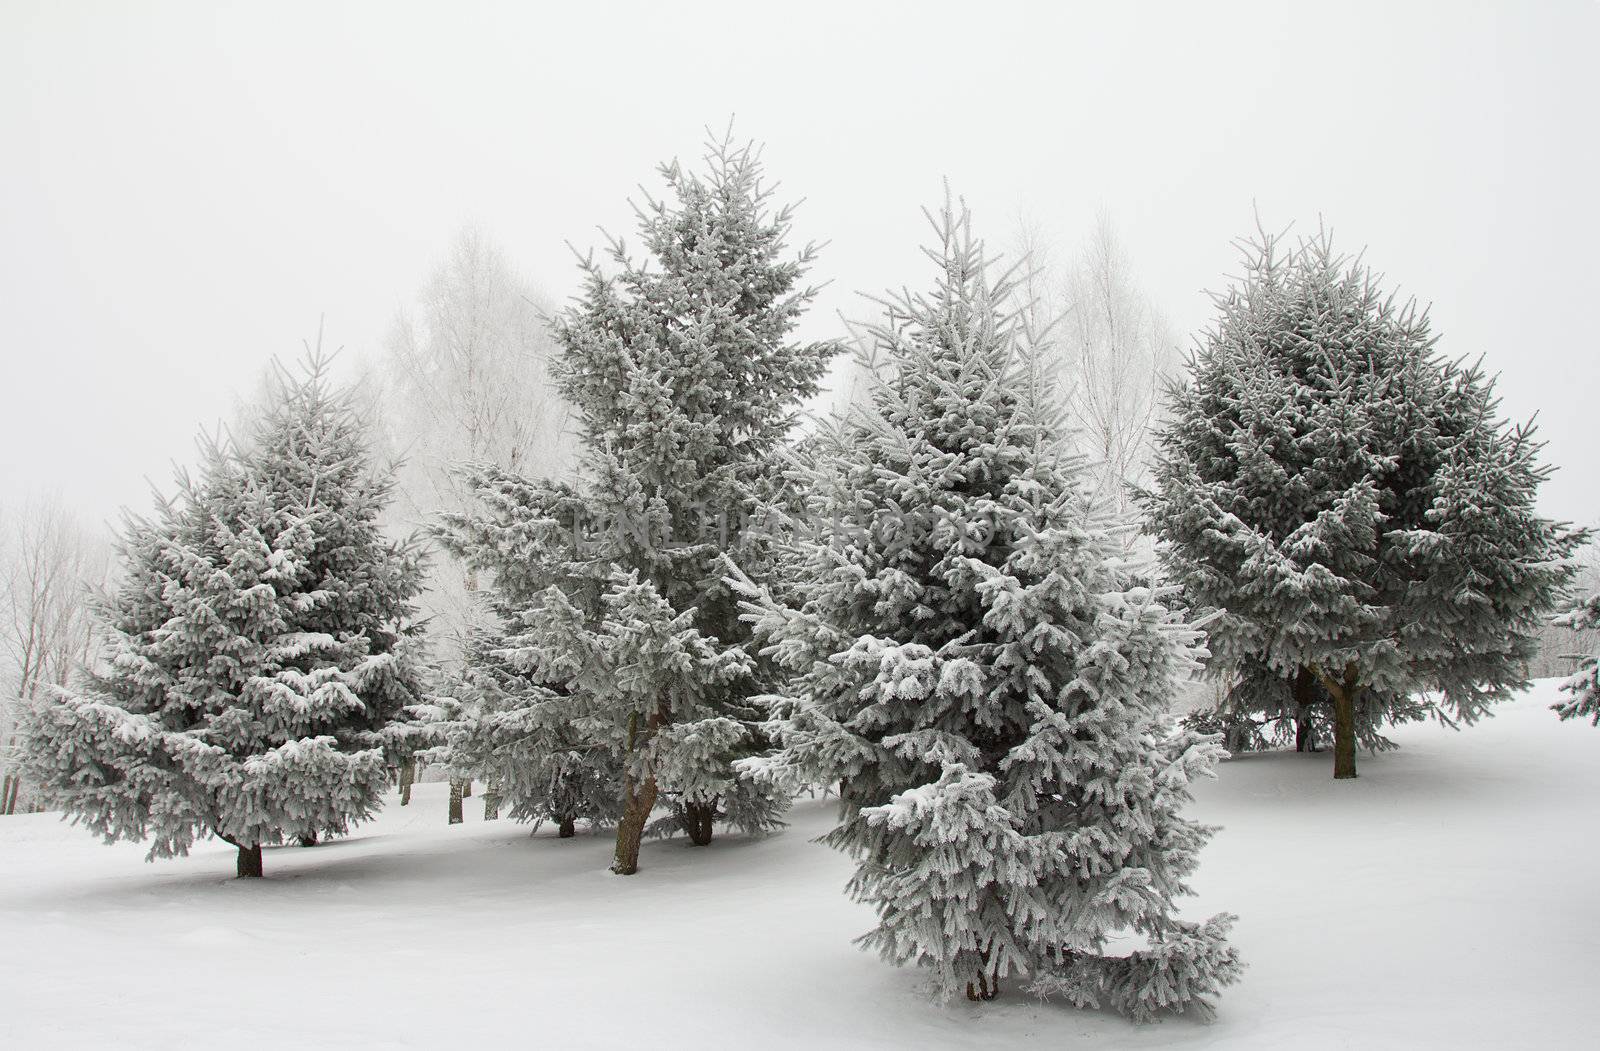 december fir trees in hoarfrost